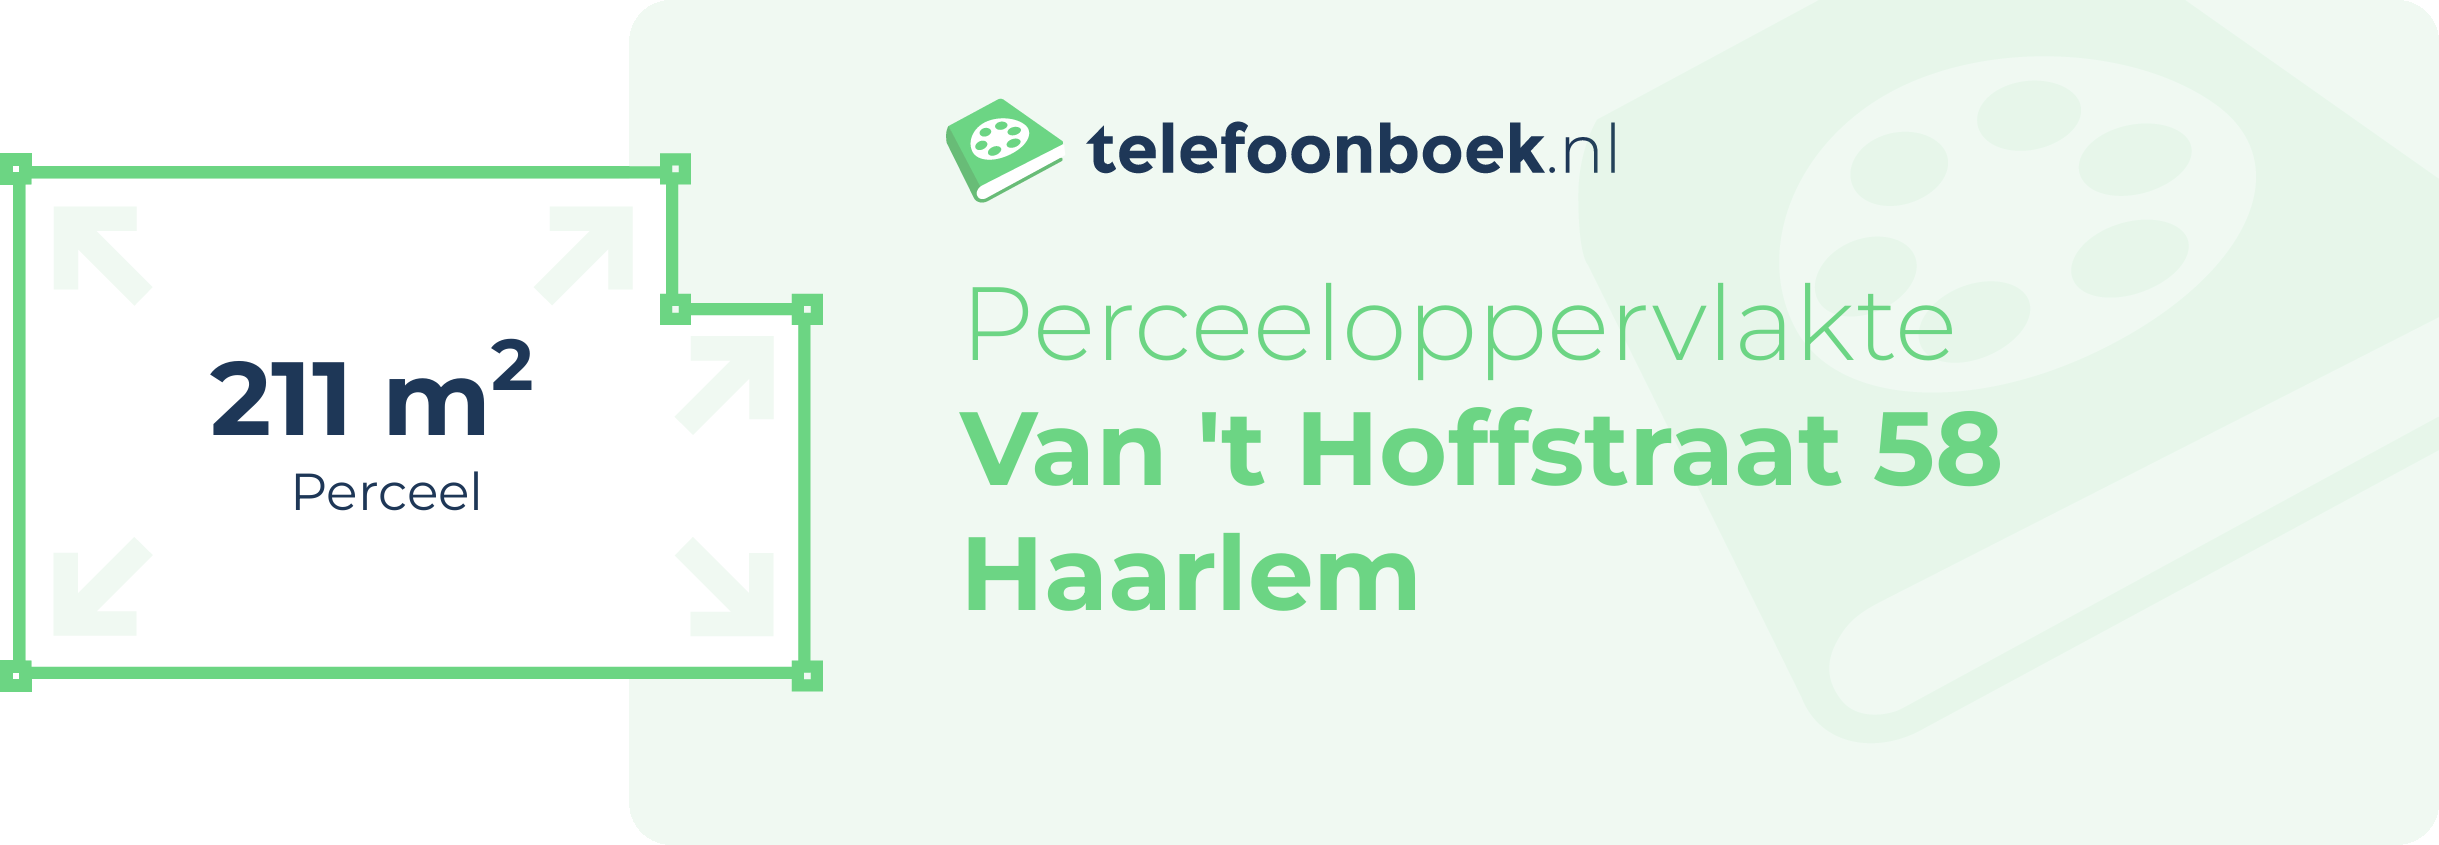 Perceeloppervlakte Van 't Hoffstraat 58 Haarlem